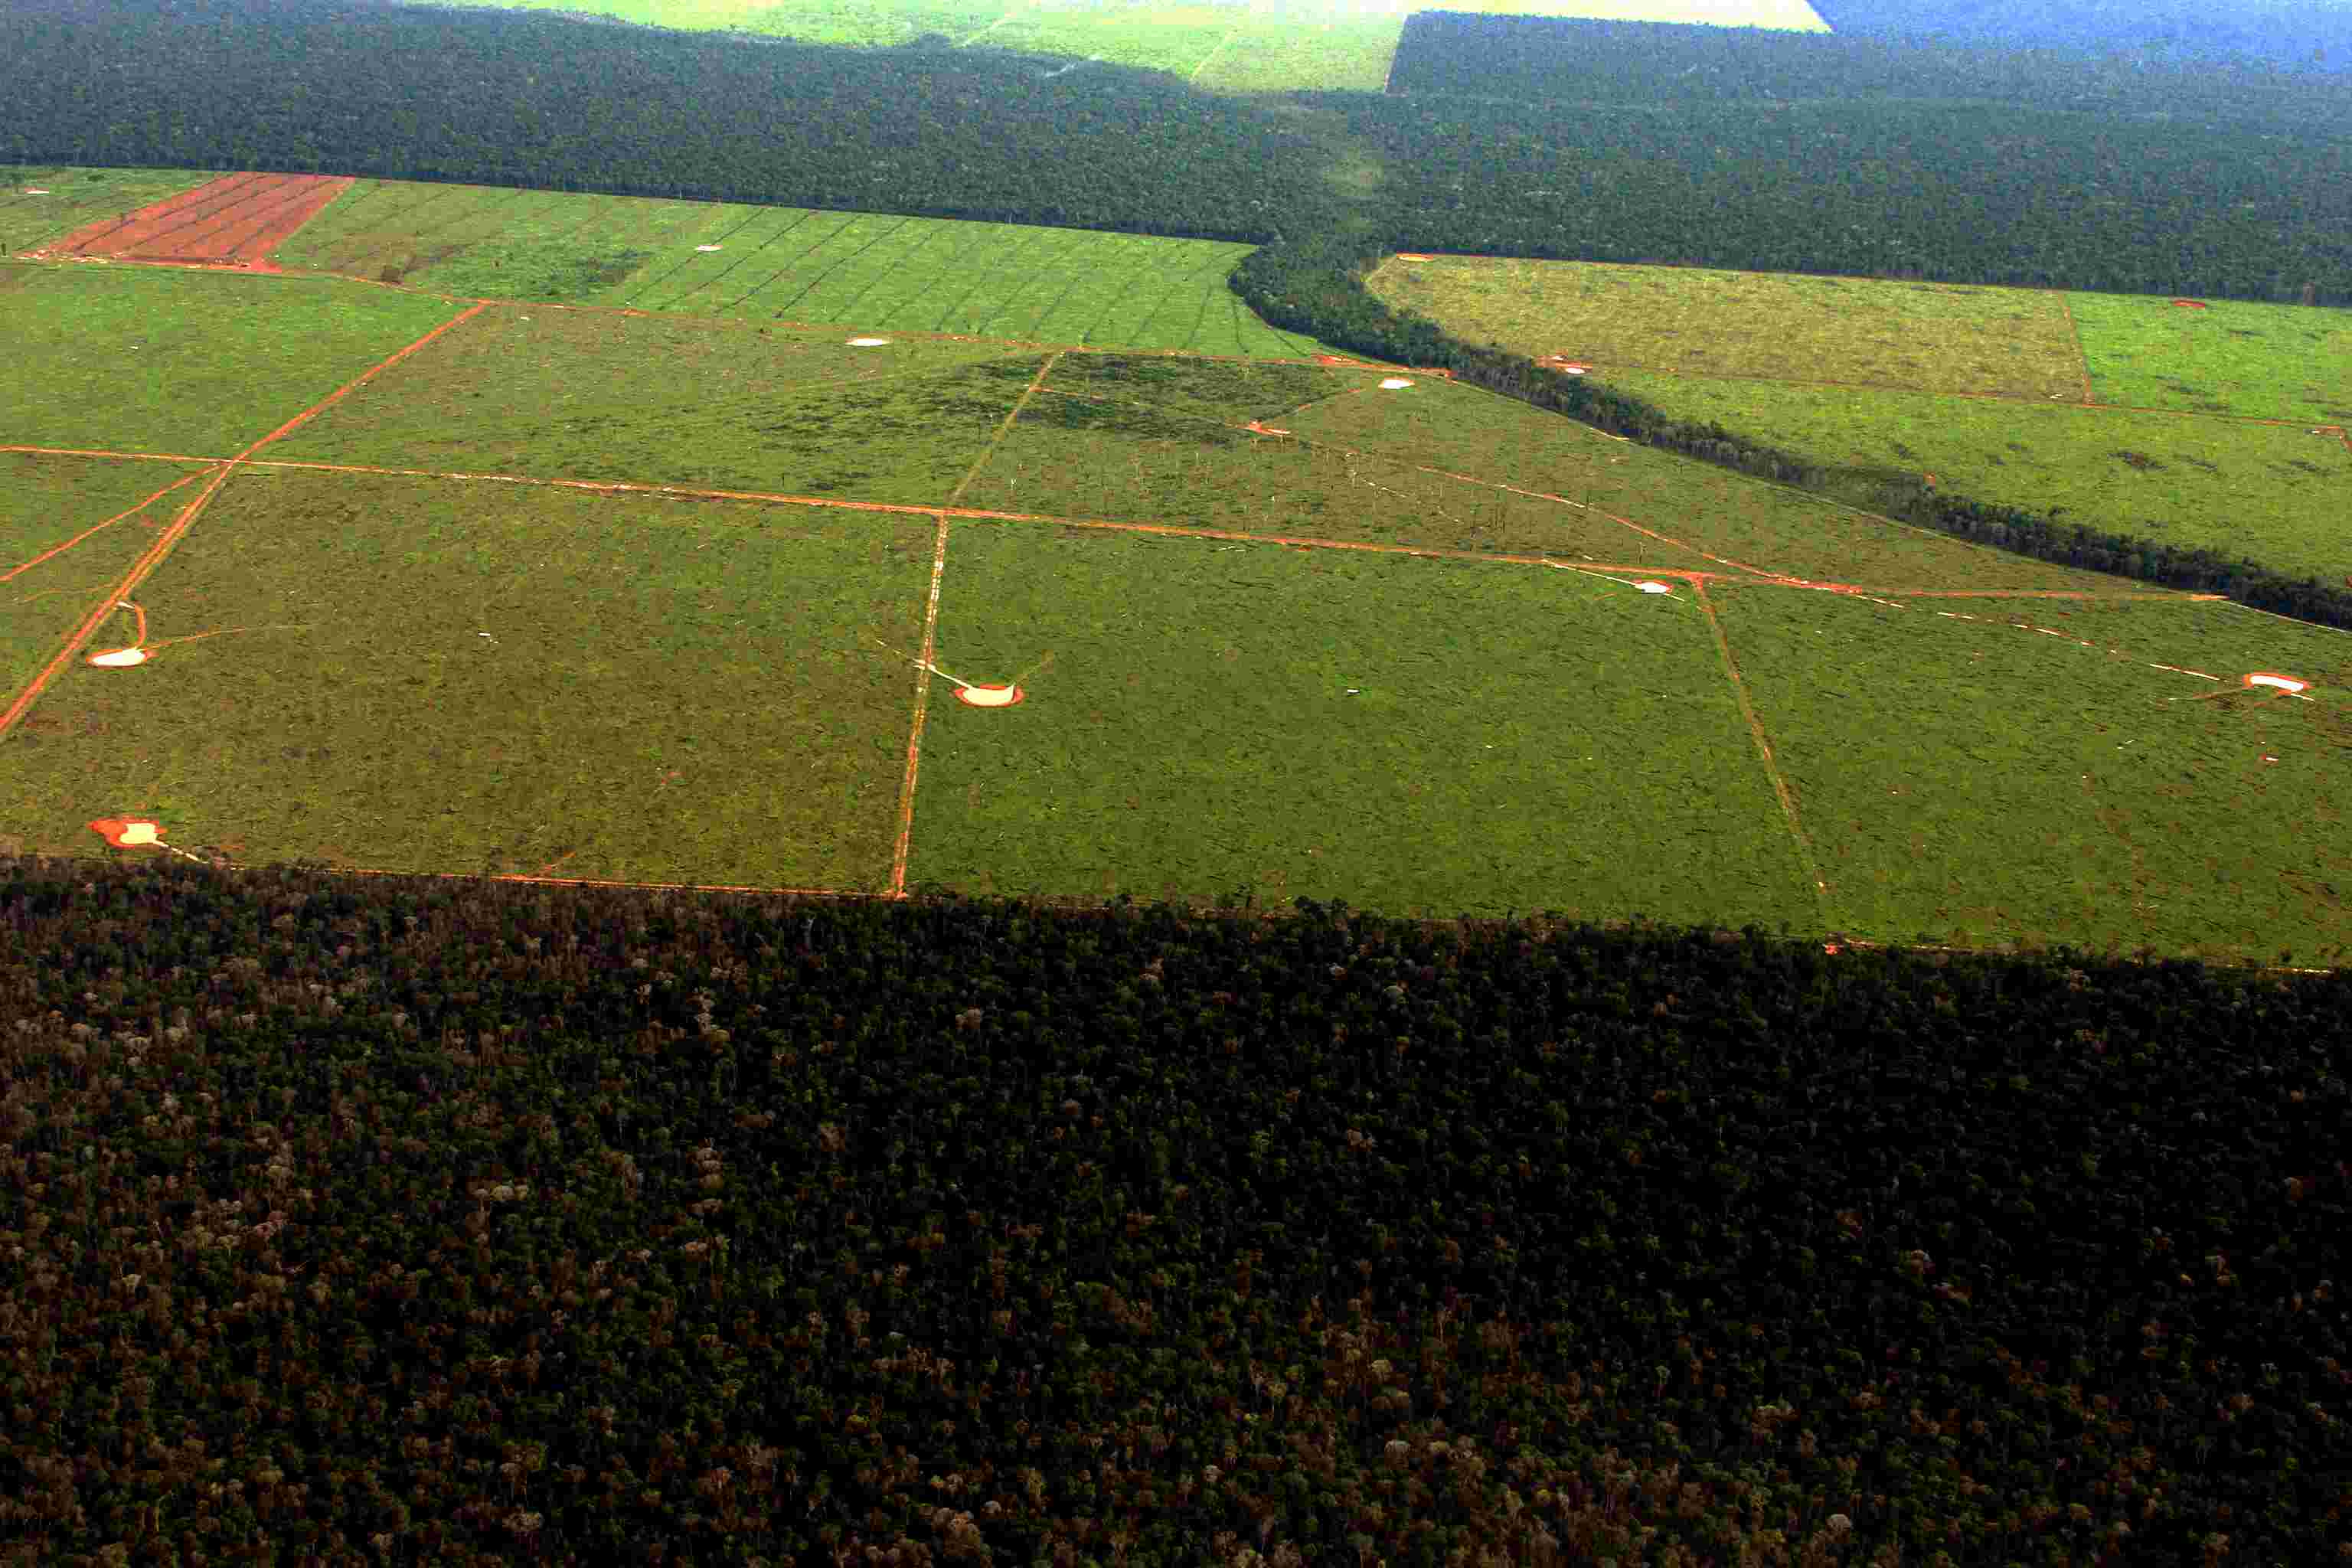 Regras para a produção da soja na Amazônia devem ser discutidas em fórum internacional defendem ONGs (foto: Vandré Fonseca)